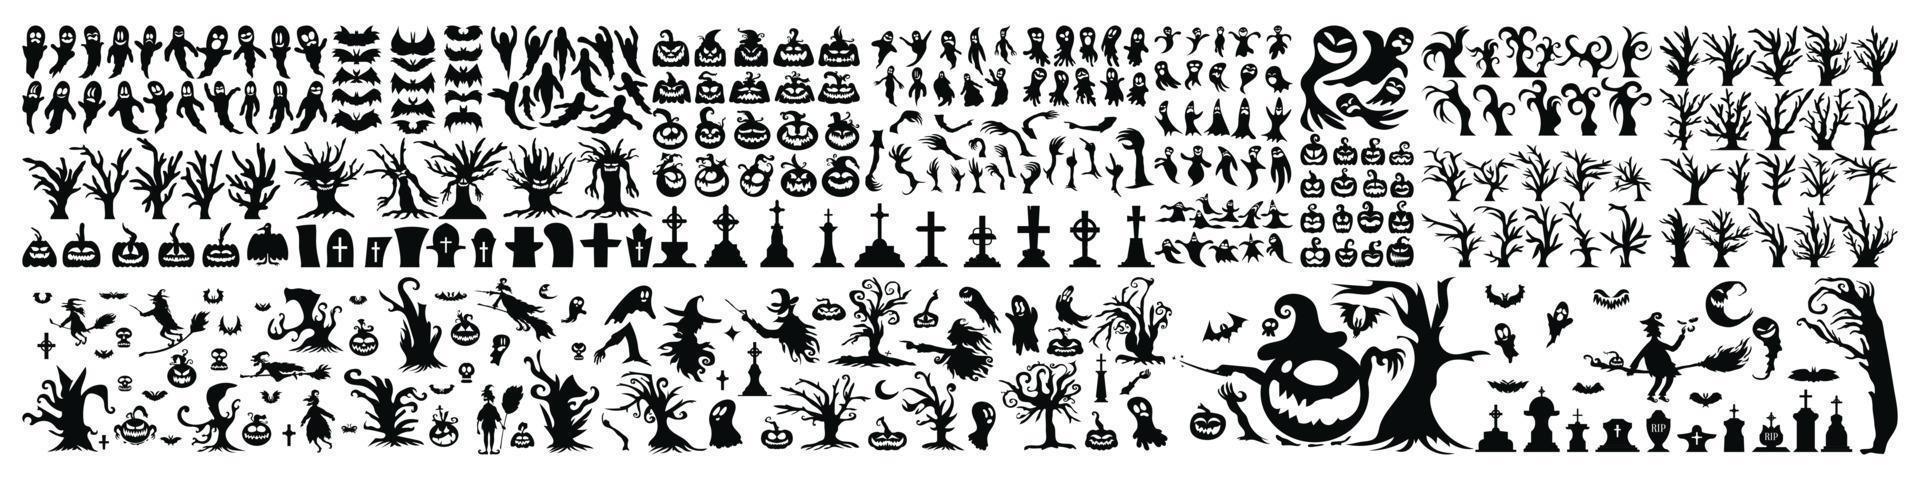 grande set di icone e personaggi della siluetta di halloween. illustrazione vettoriale di halloween isolata su sfondo bianco. elemento horror disegnato a mano